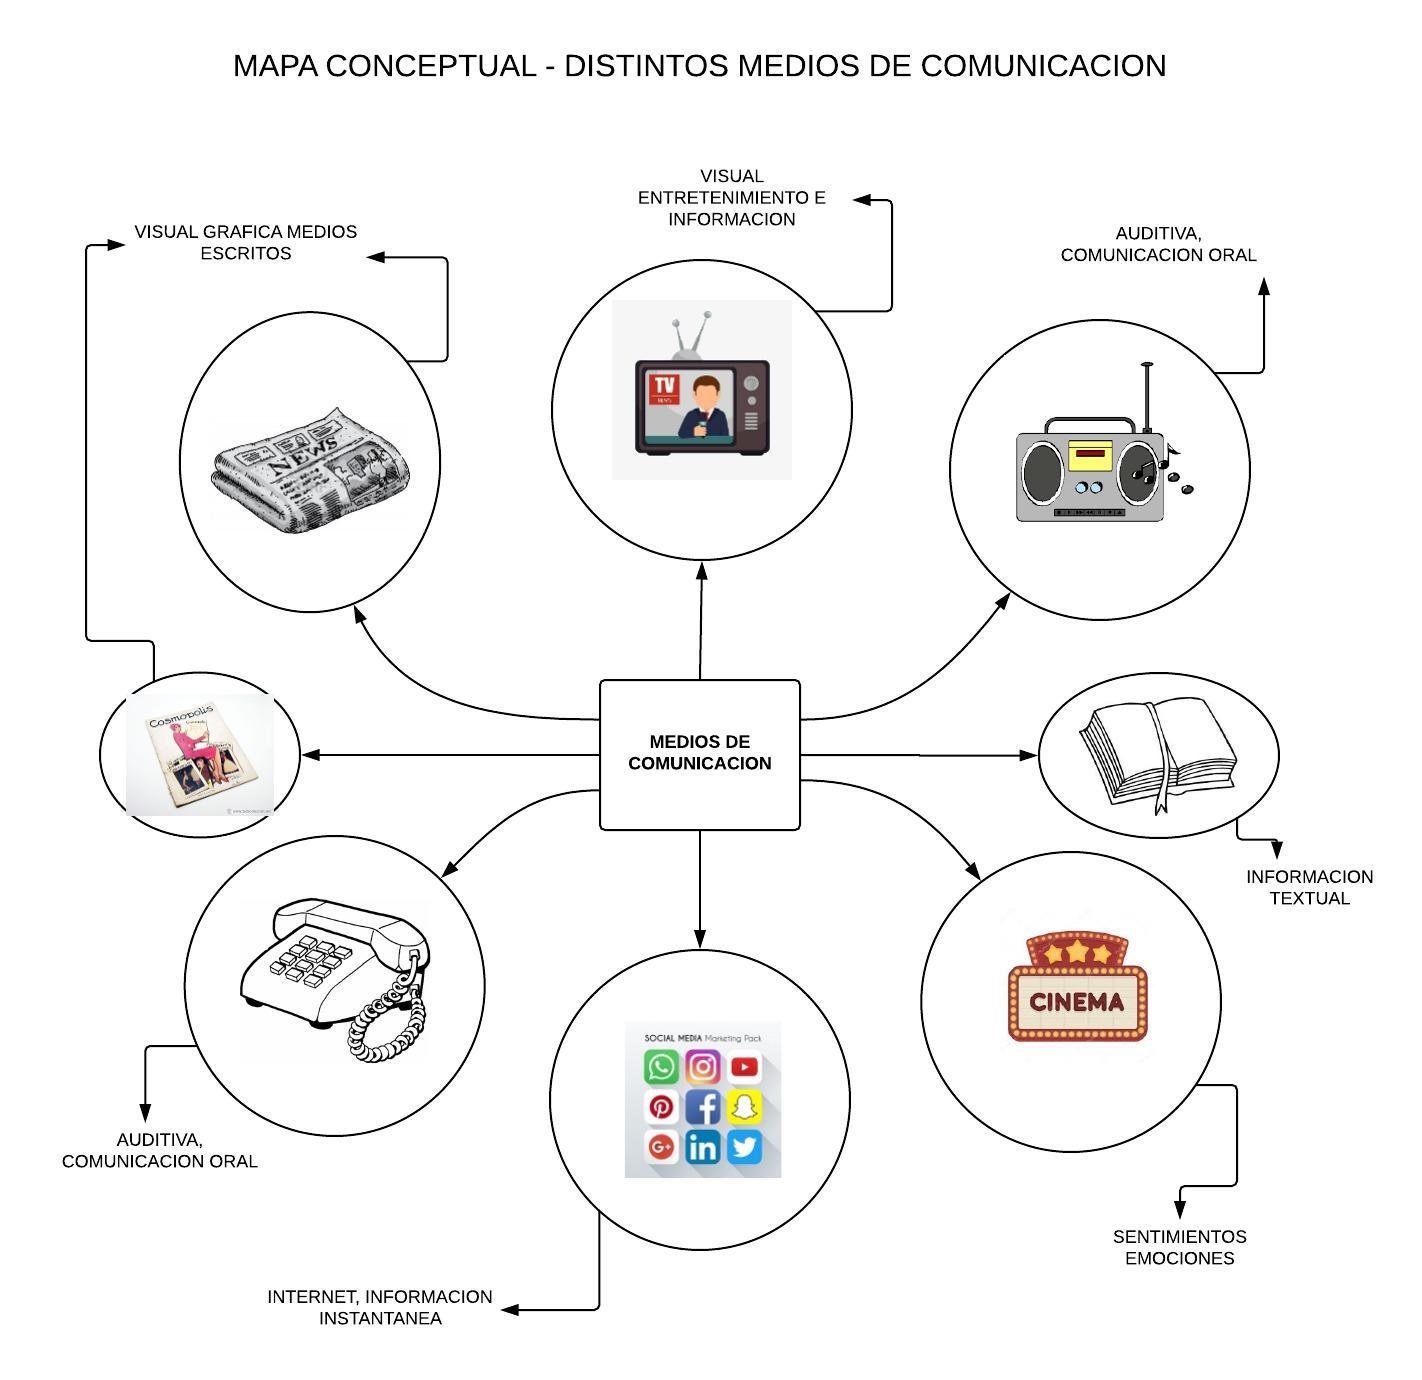 MAPA CONCEPTUAL MEDIOS DE COMUNICACION